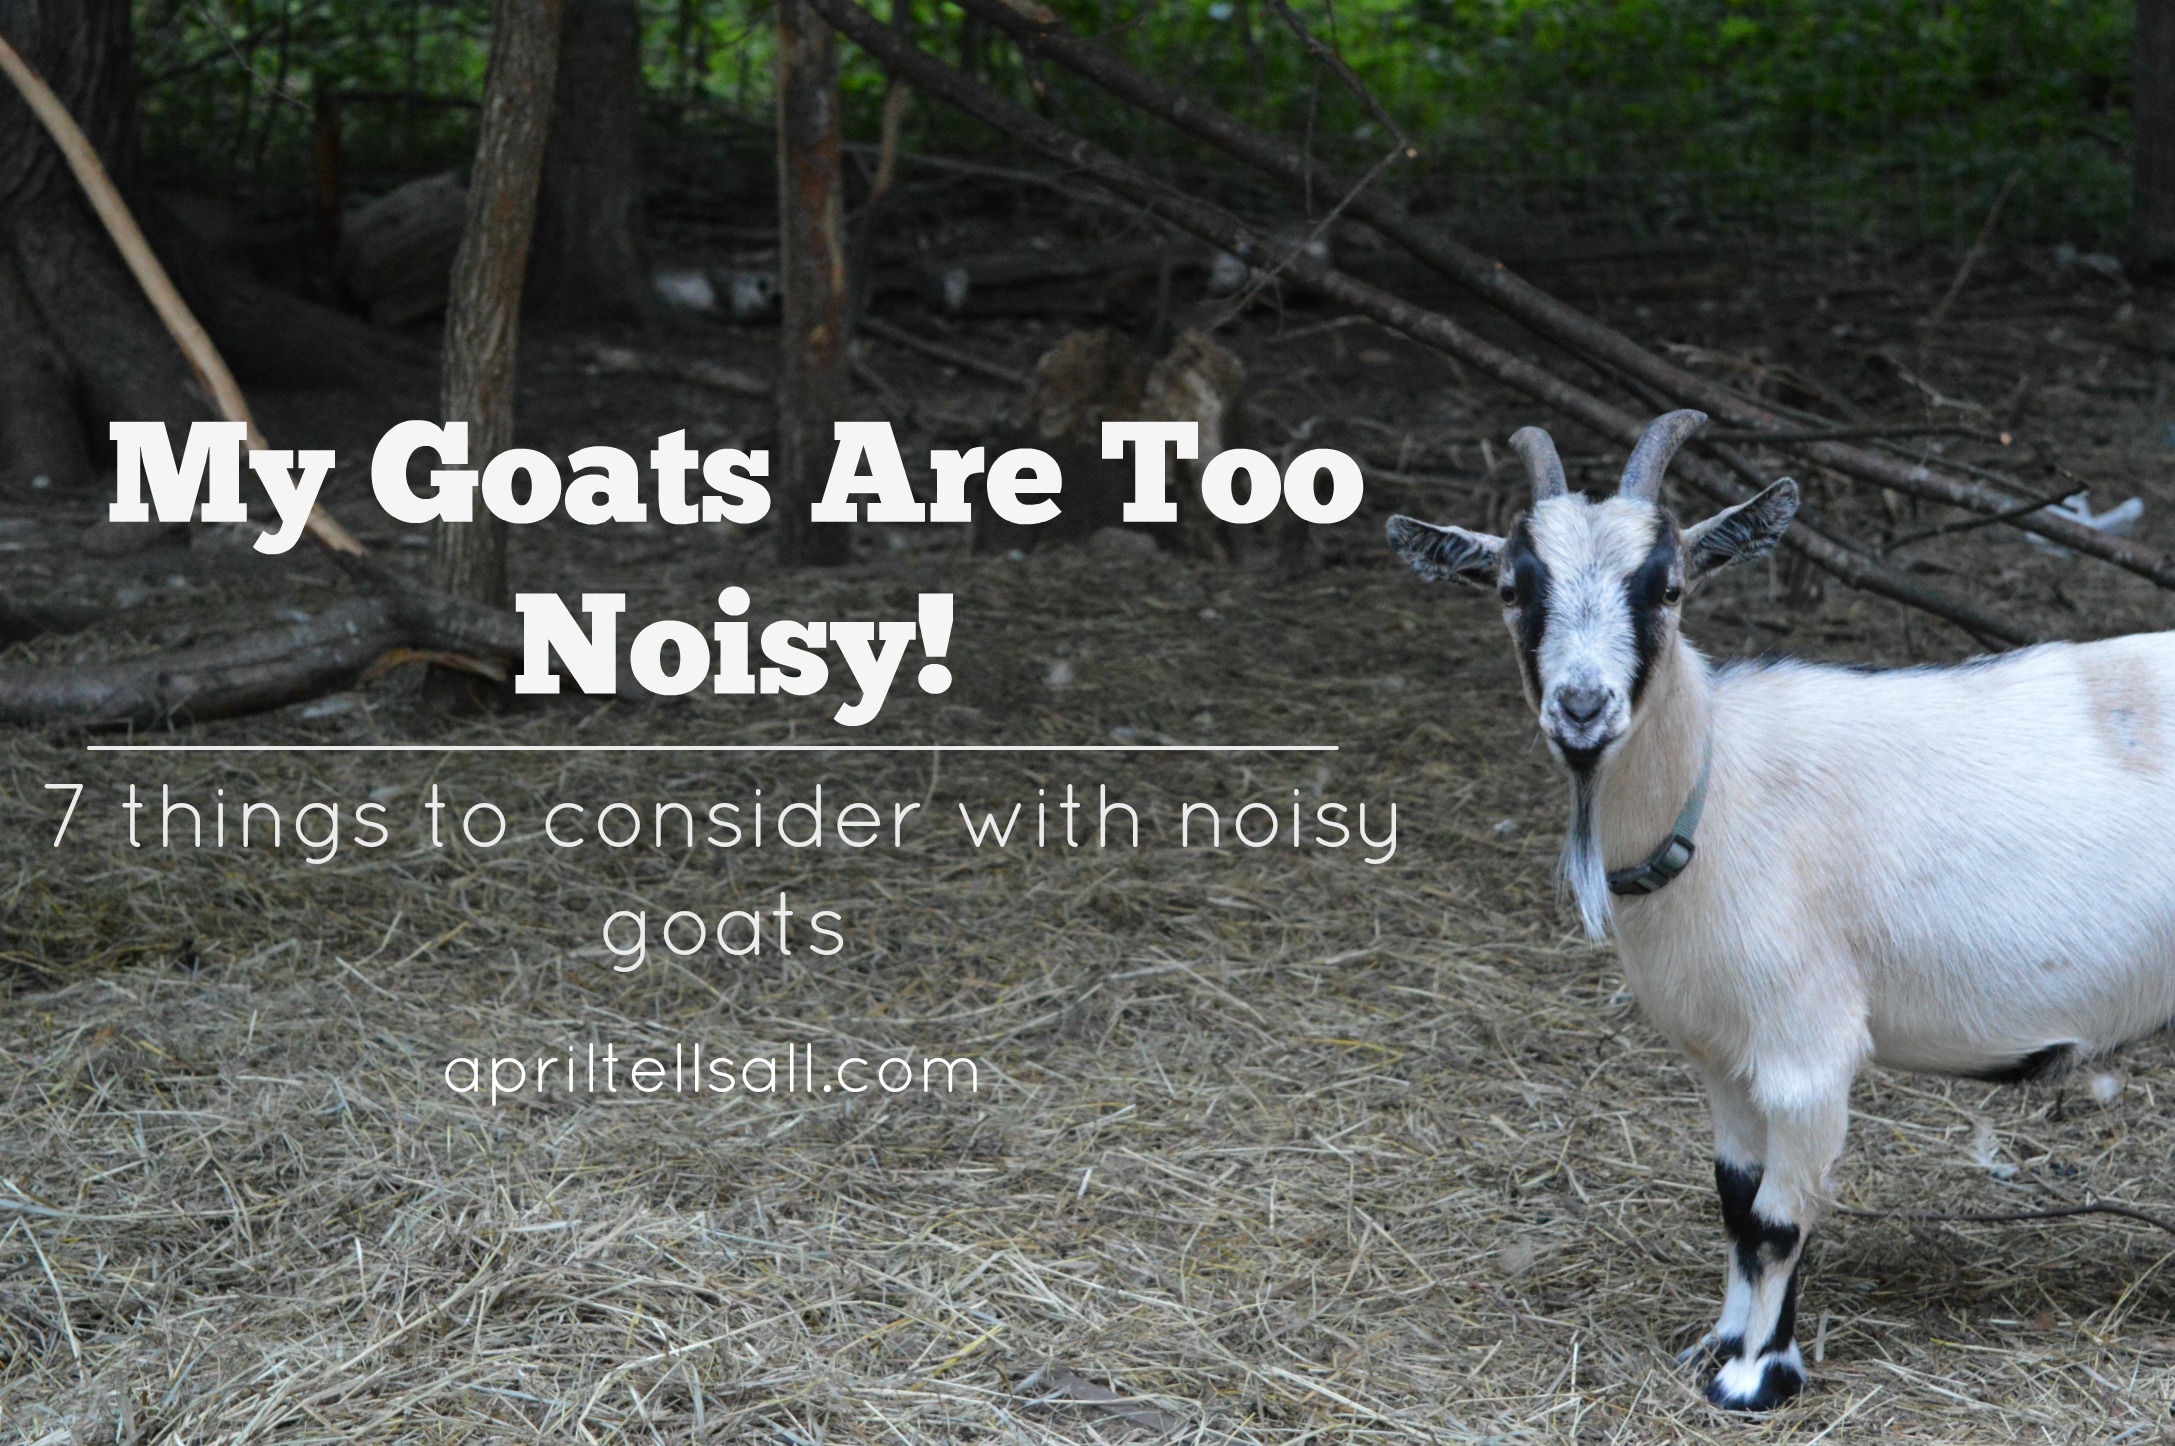 My Goats Are Too Noisy!